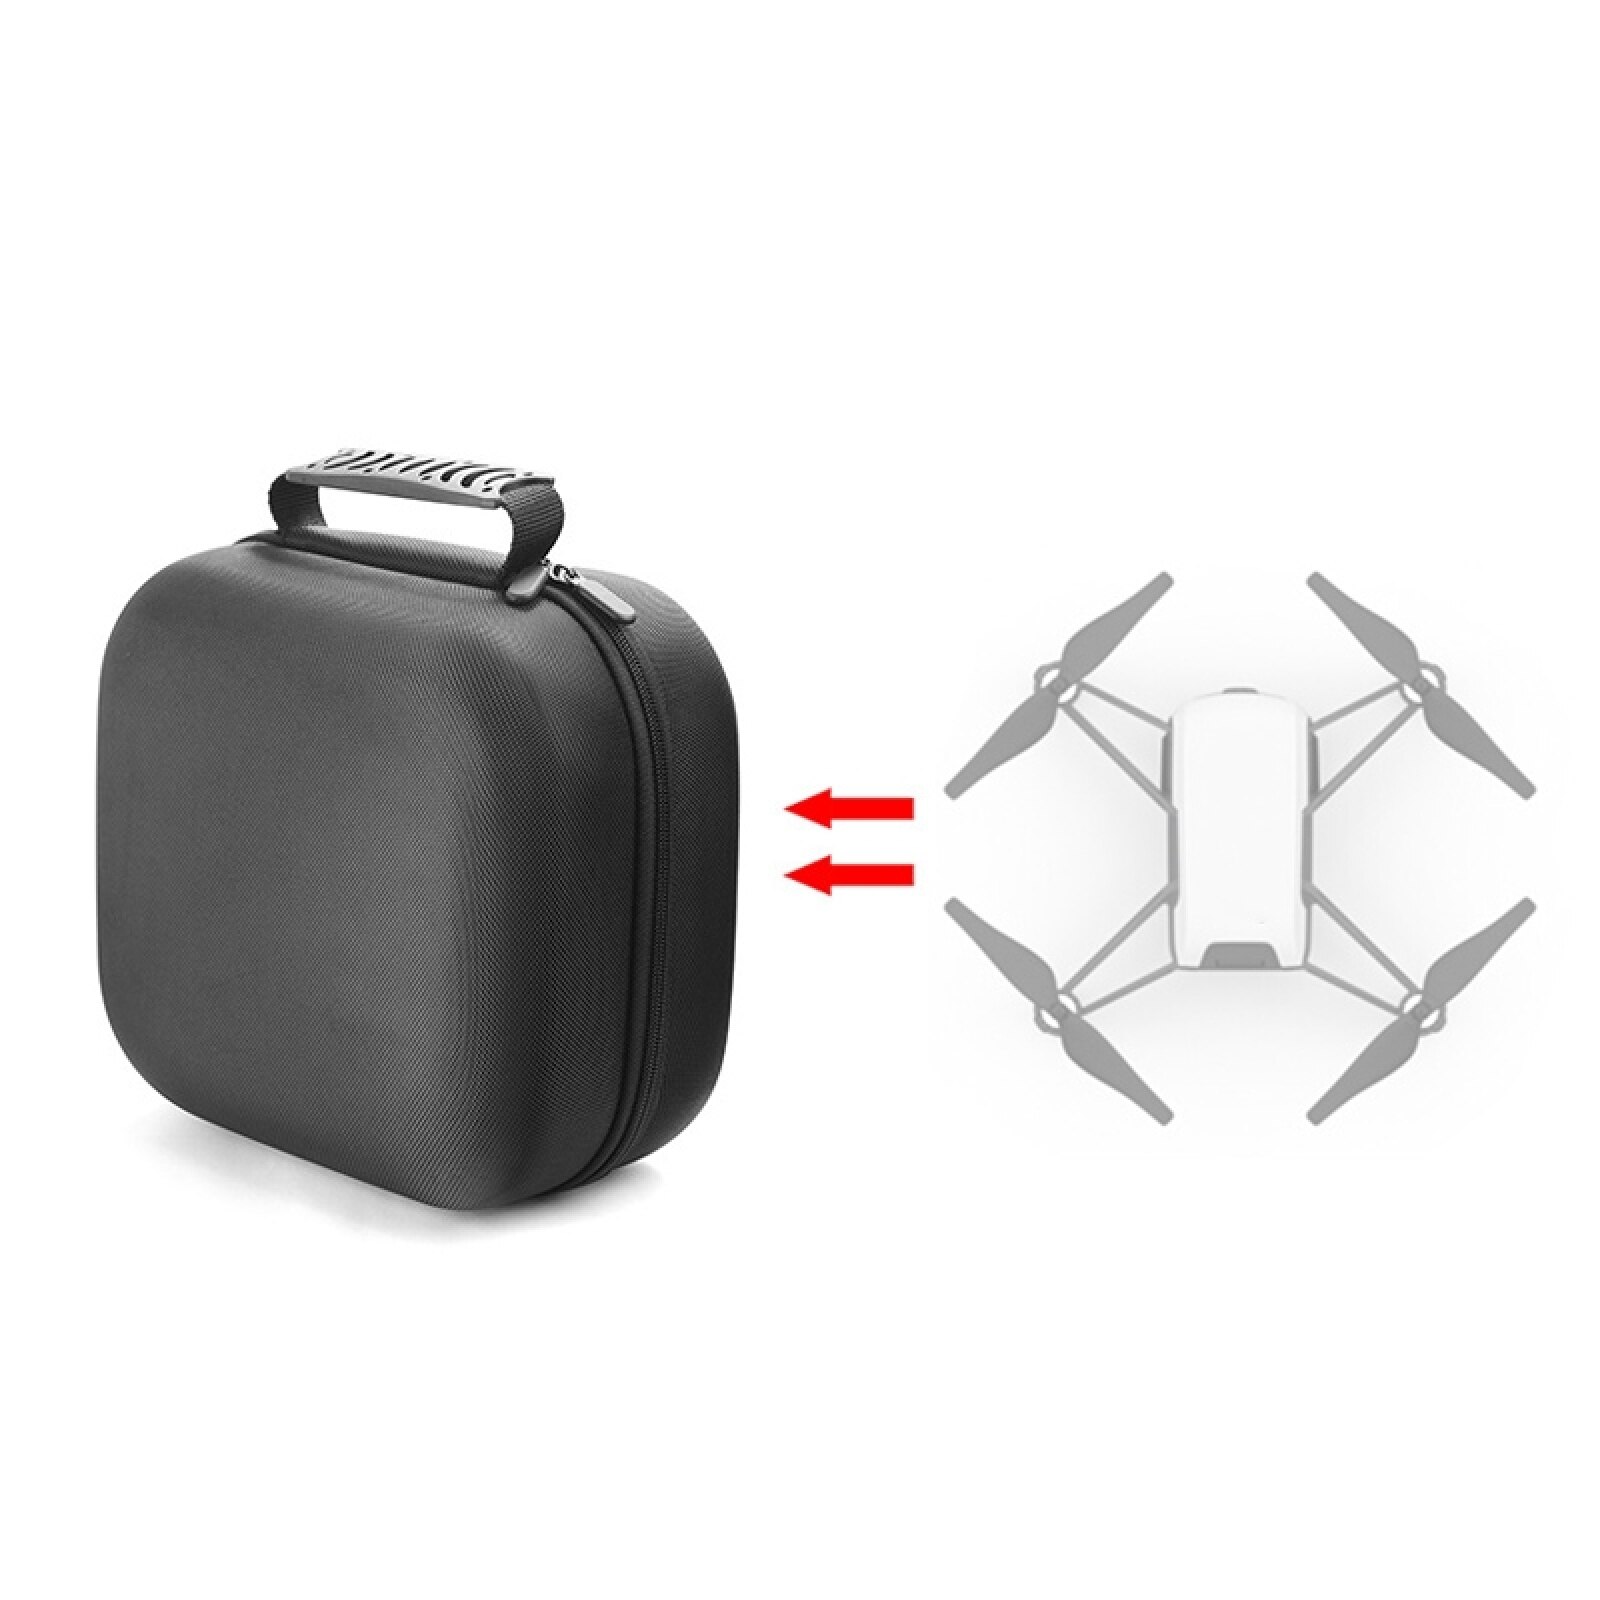 Tragbare Clever Heimat Projektor Schutzhülle Tasche Für MIJIA Lite Mini Projektor-Reise Durchführung Lagerung Tasche Für DJI TELLO Drohne